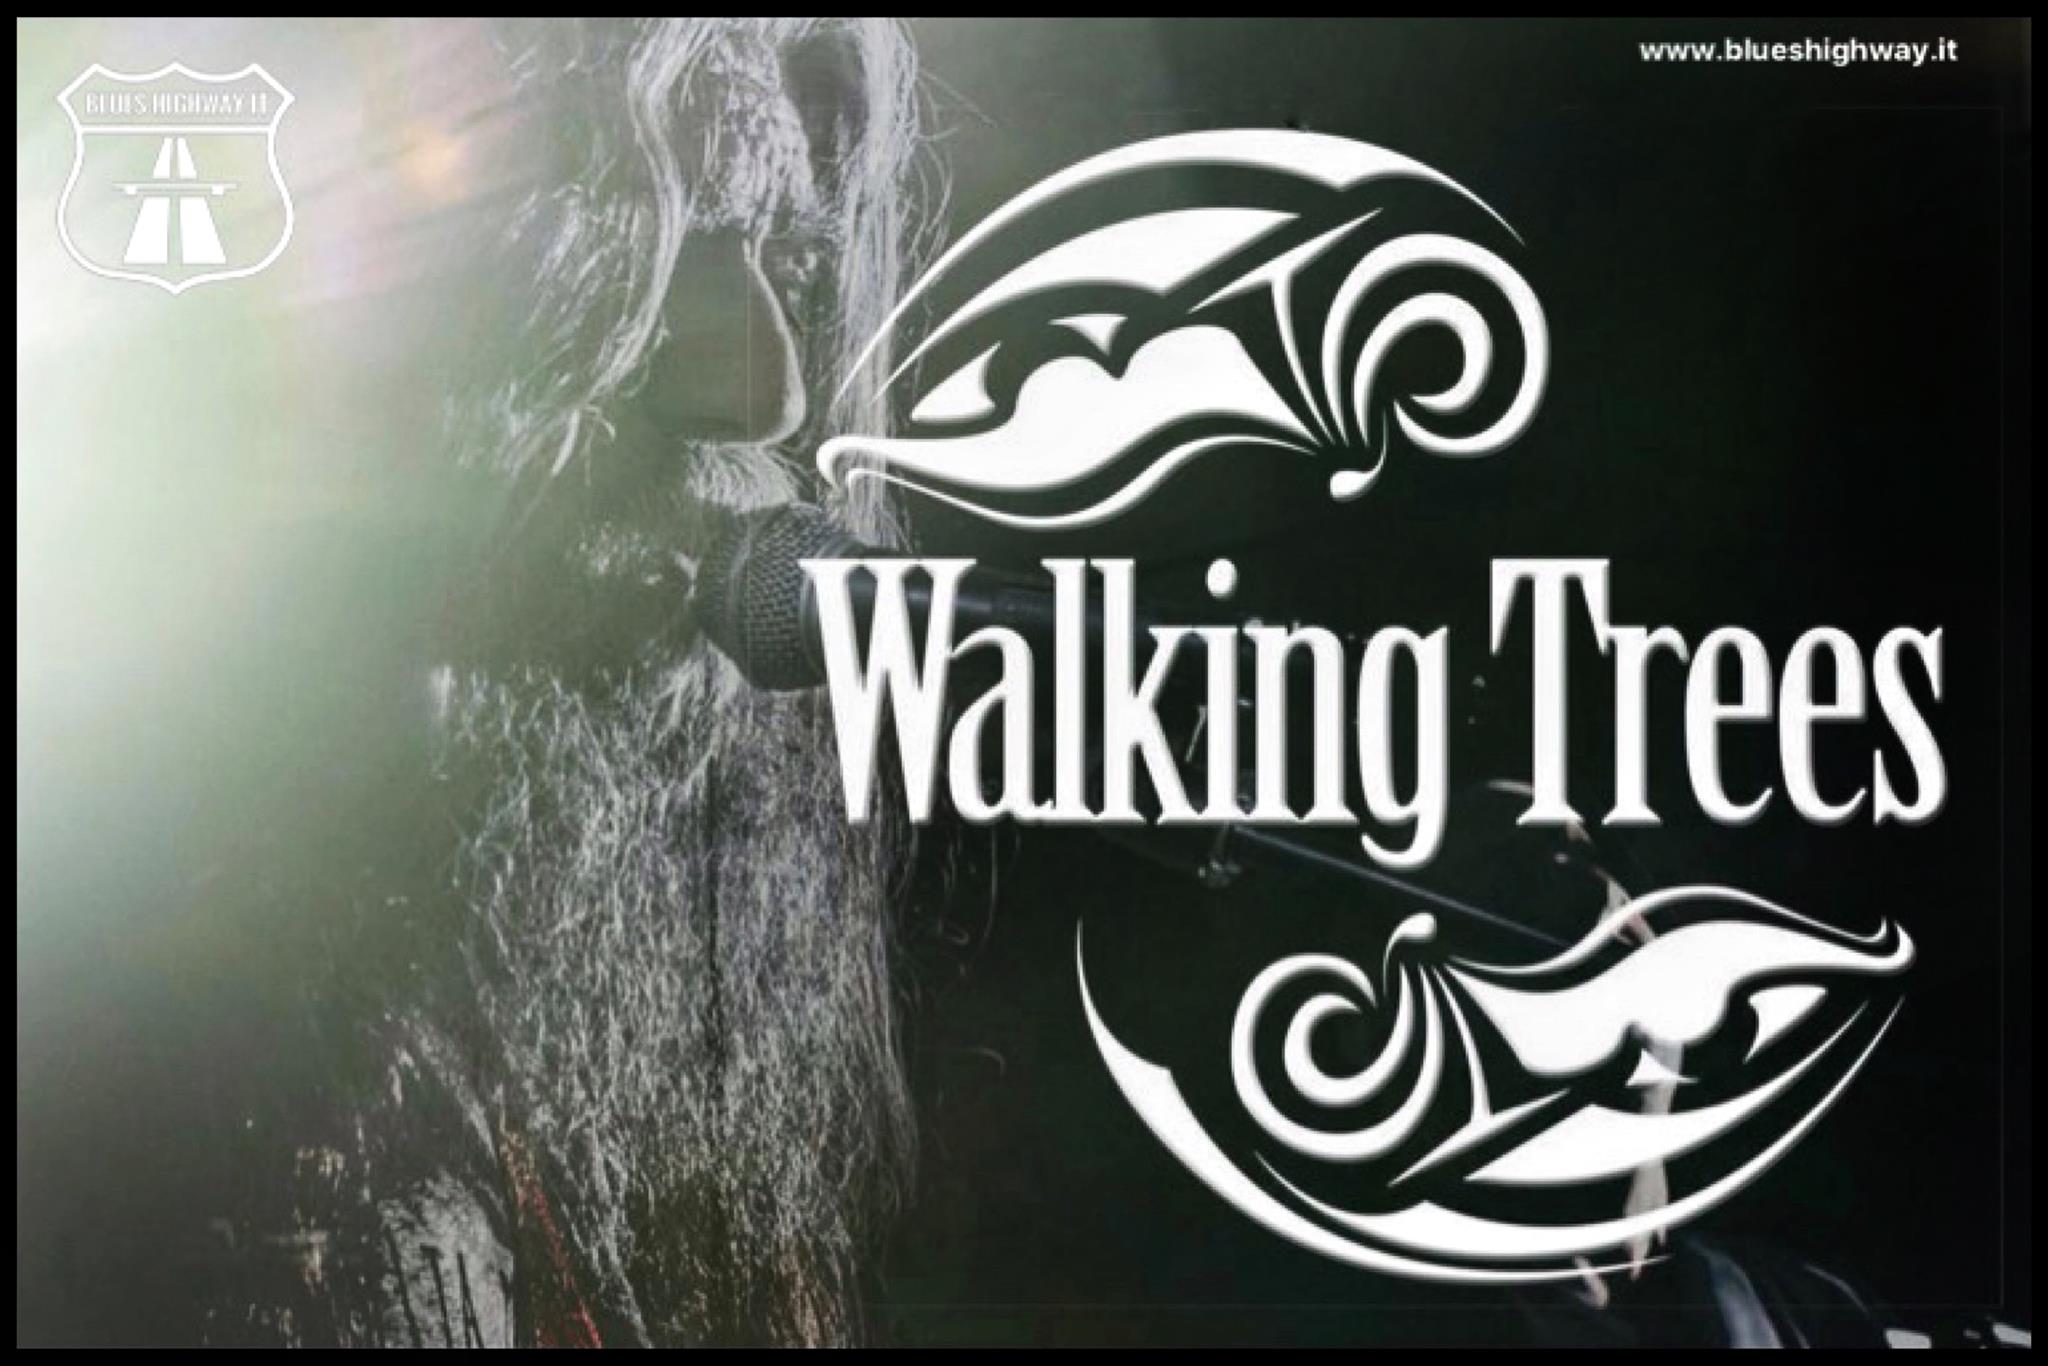 WALKING TREES